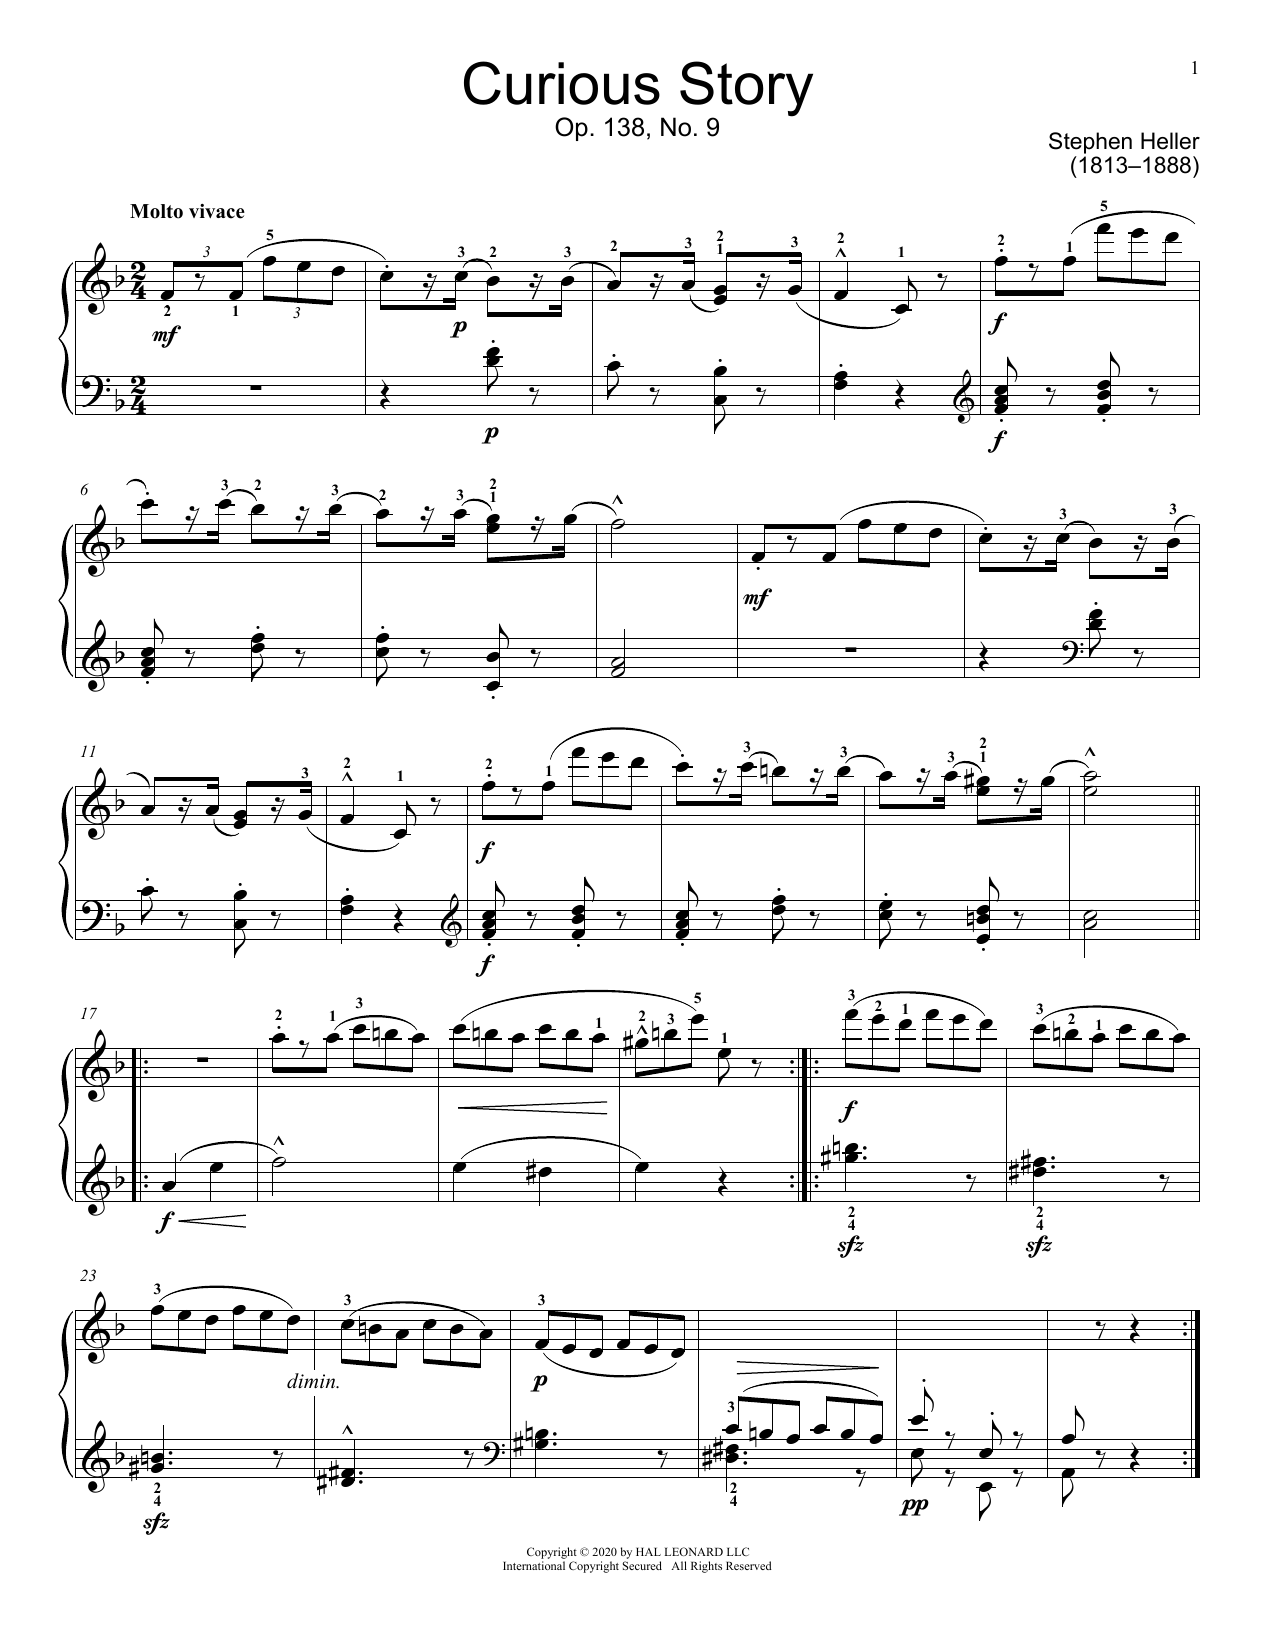 Download Stephen Heller Curious Story, Op. 138, No. 9 Sheet Music